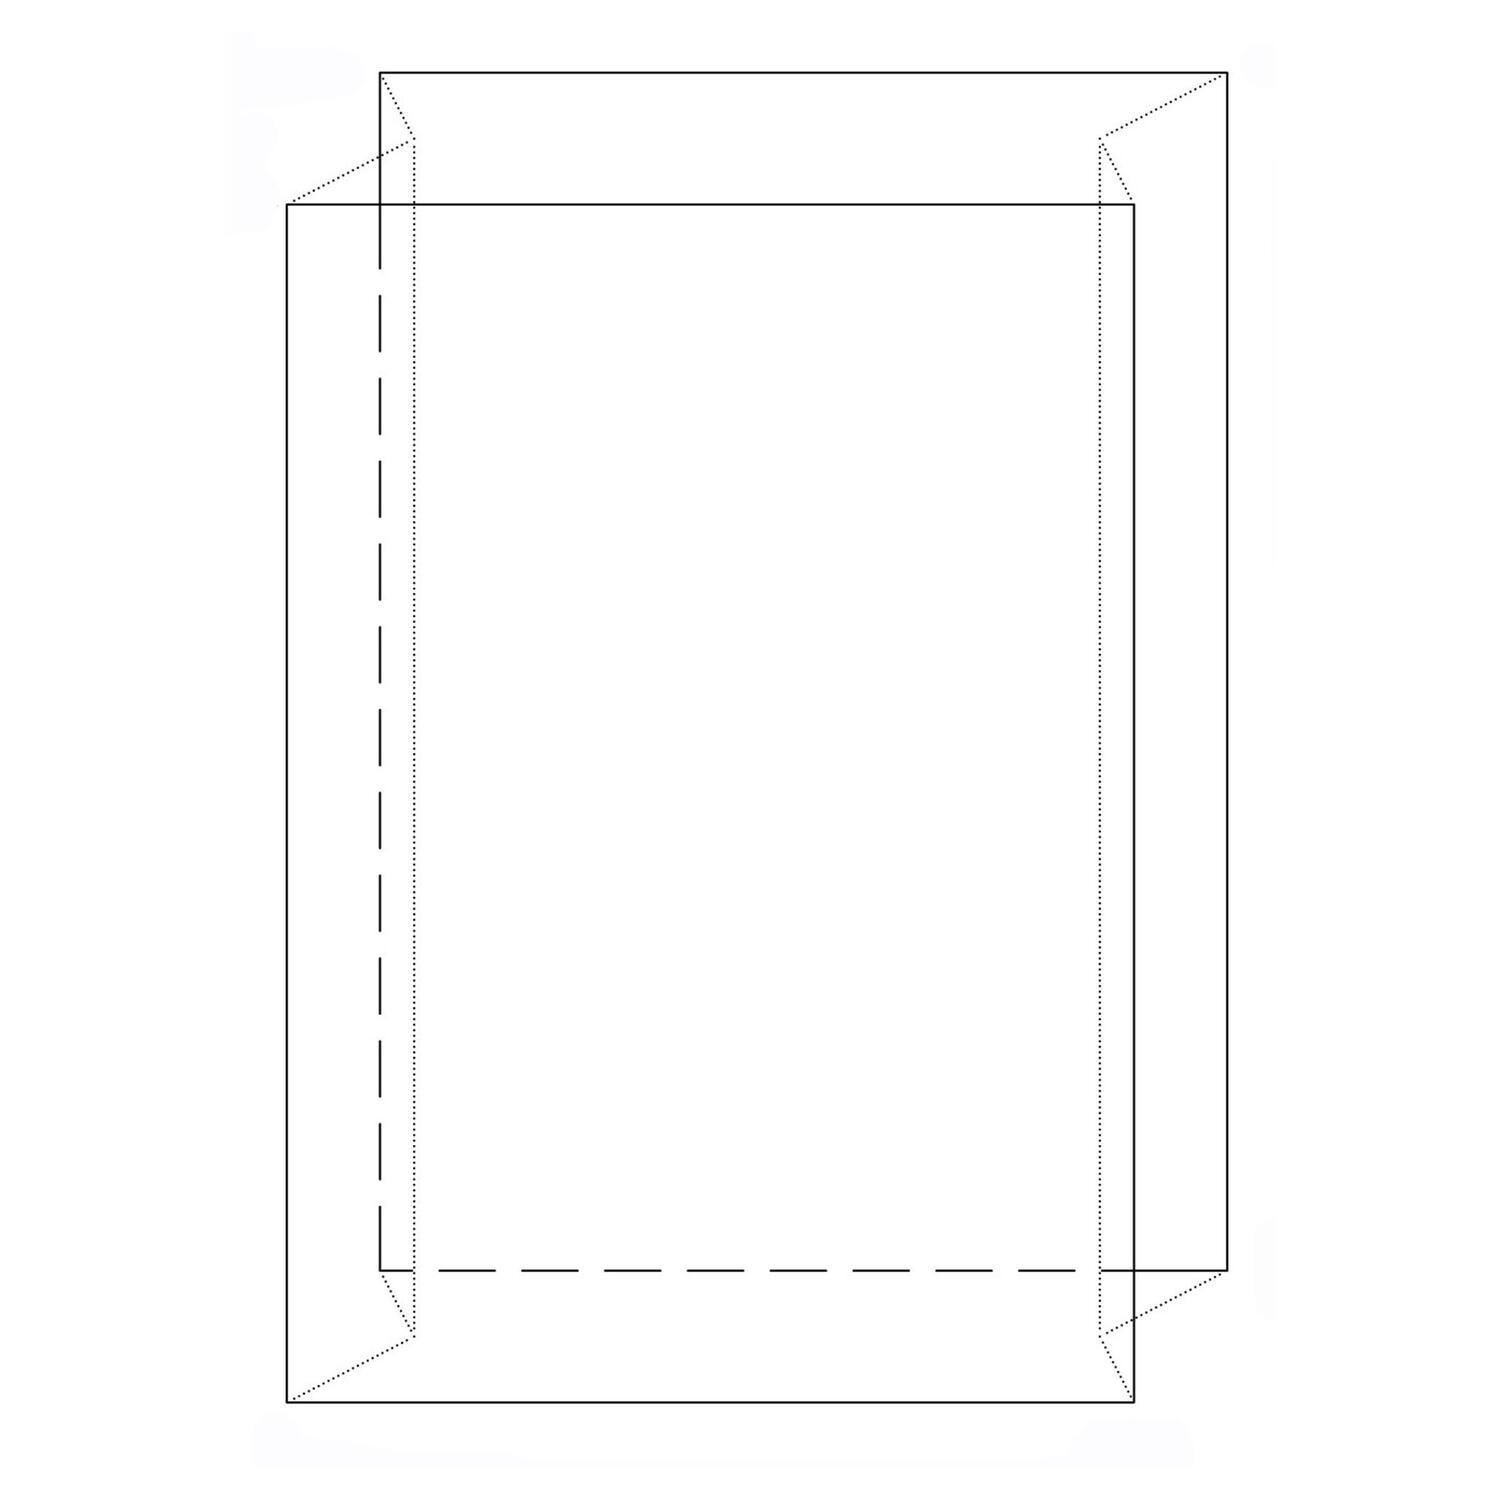 Seitenfaltensack  900+600x1800mm, LDPE transparent trb, 60 my